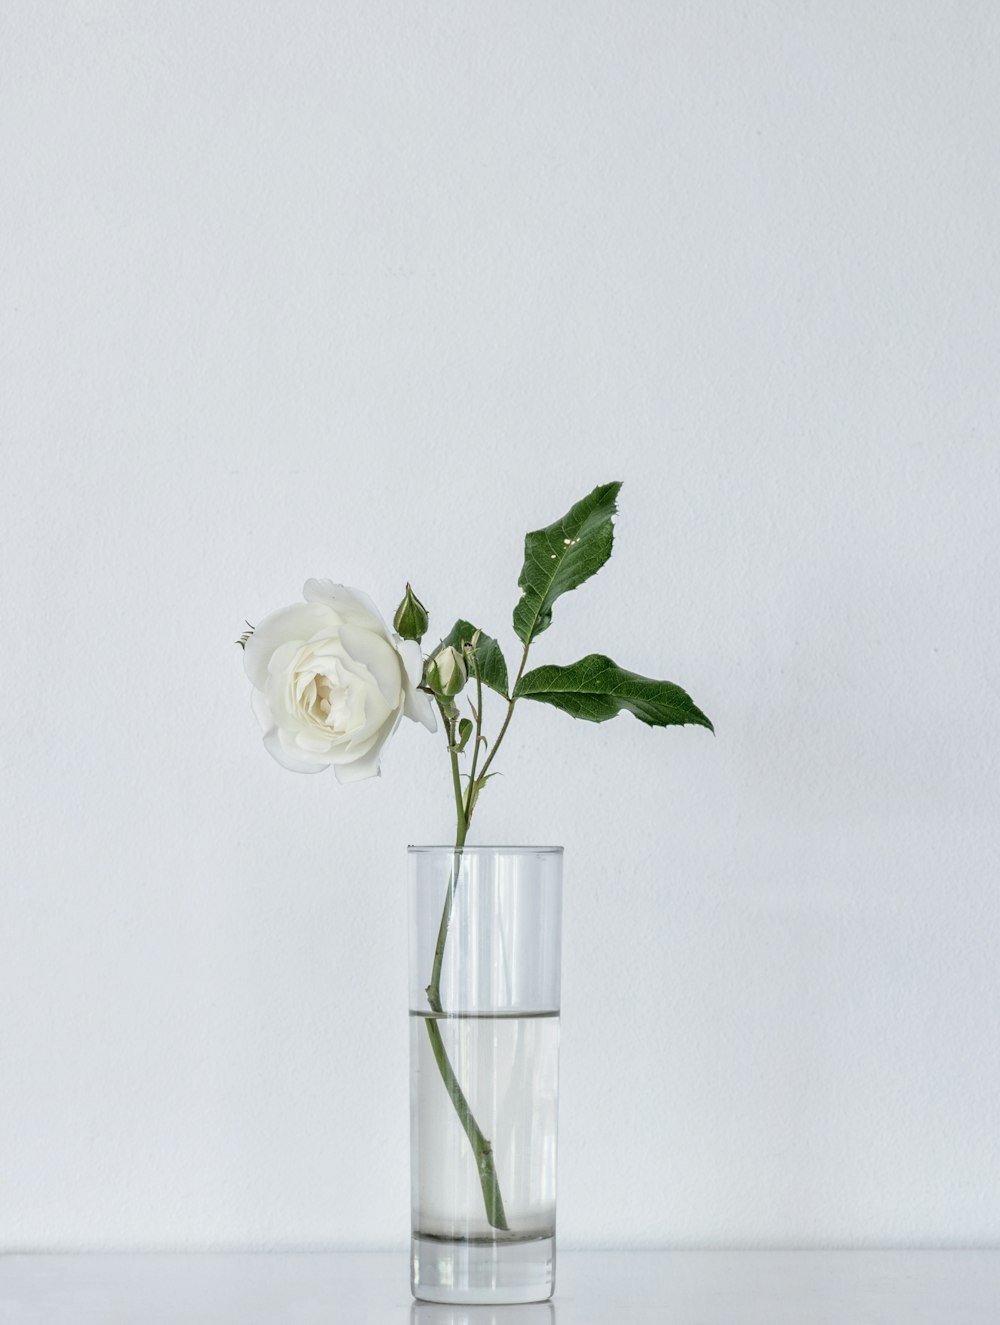 white rose on glass vase